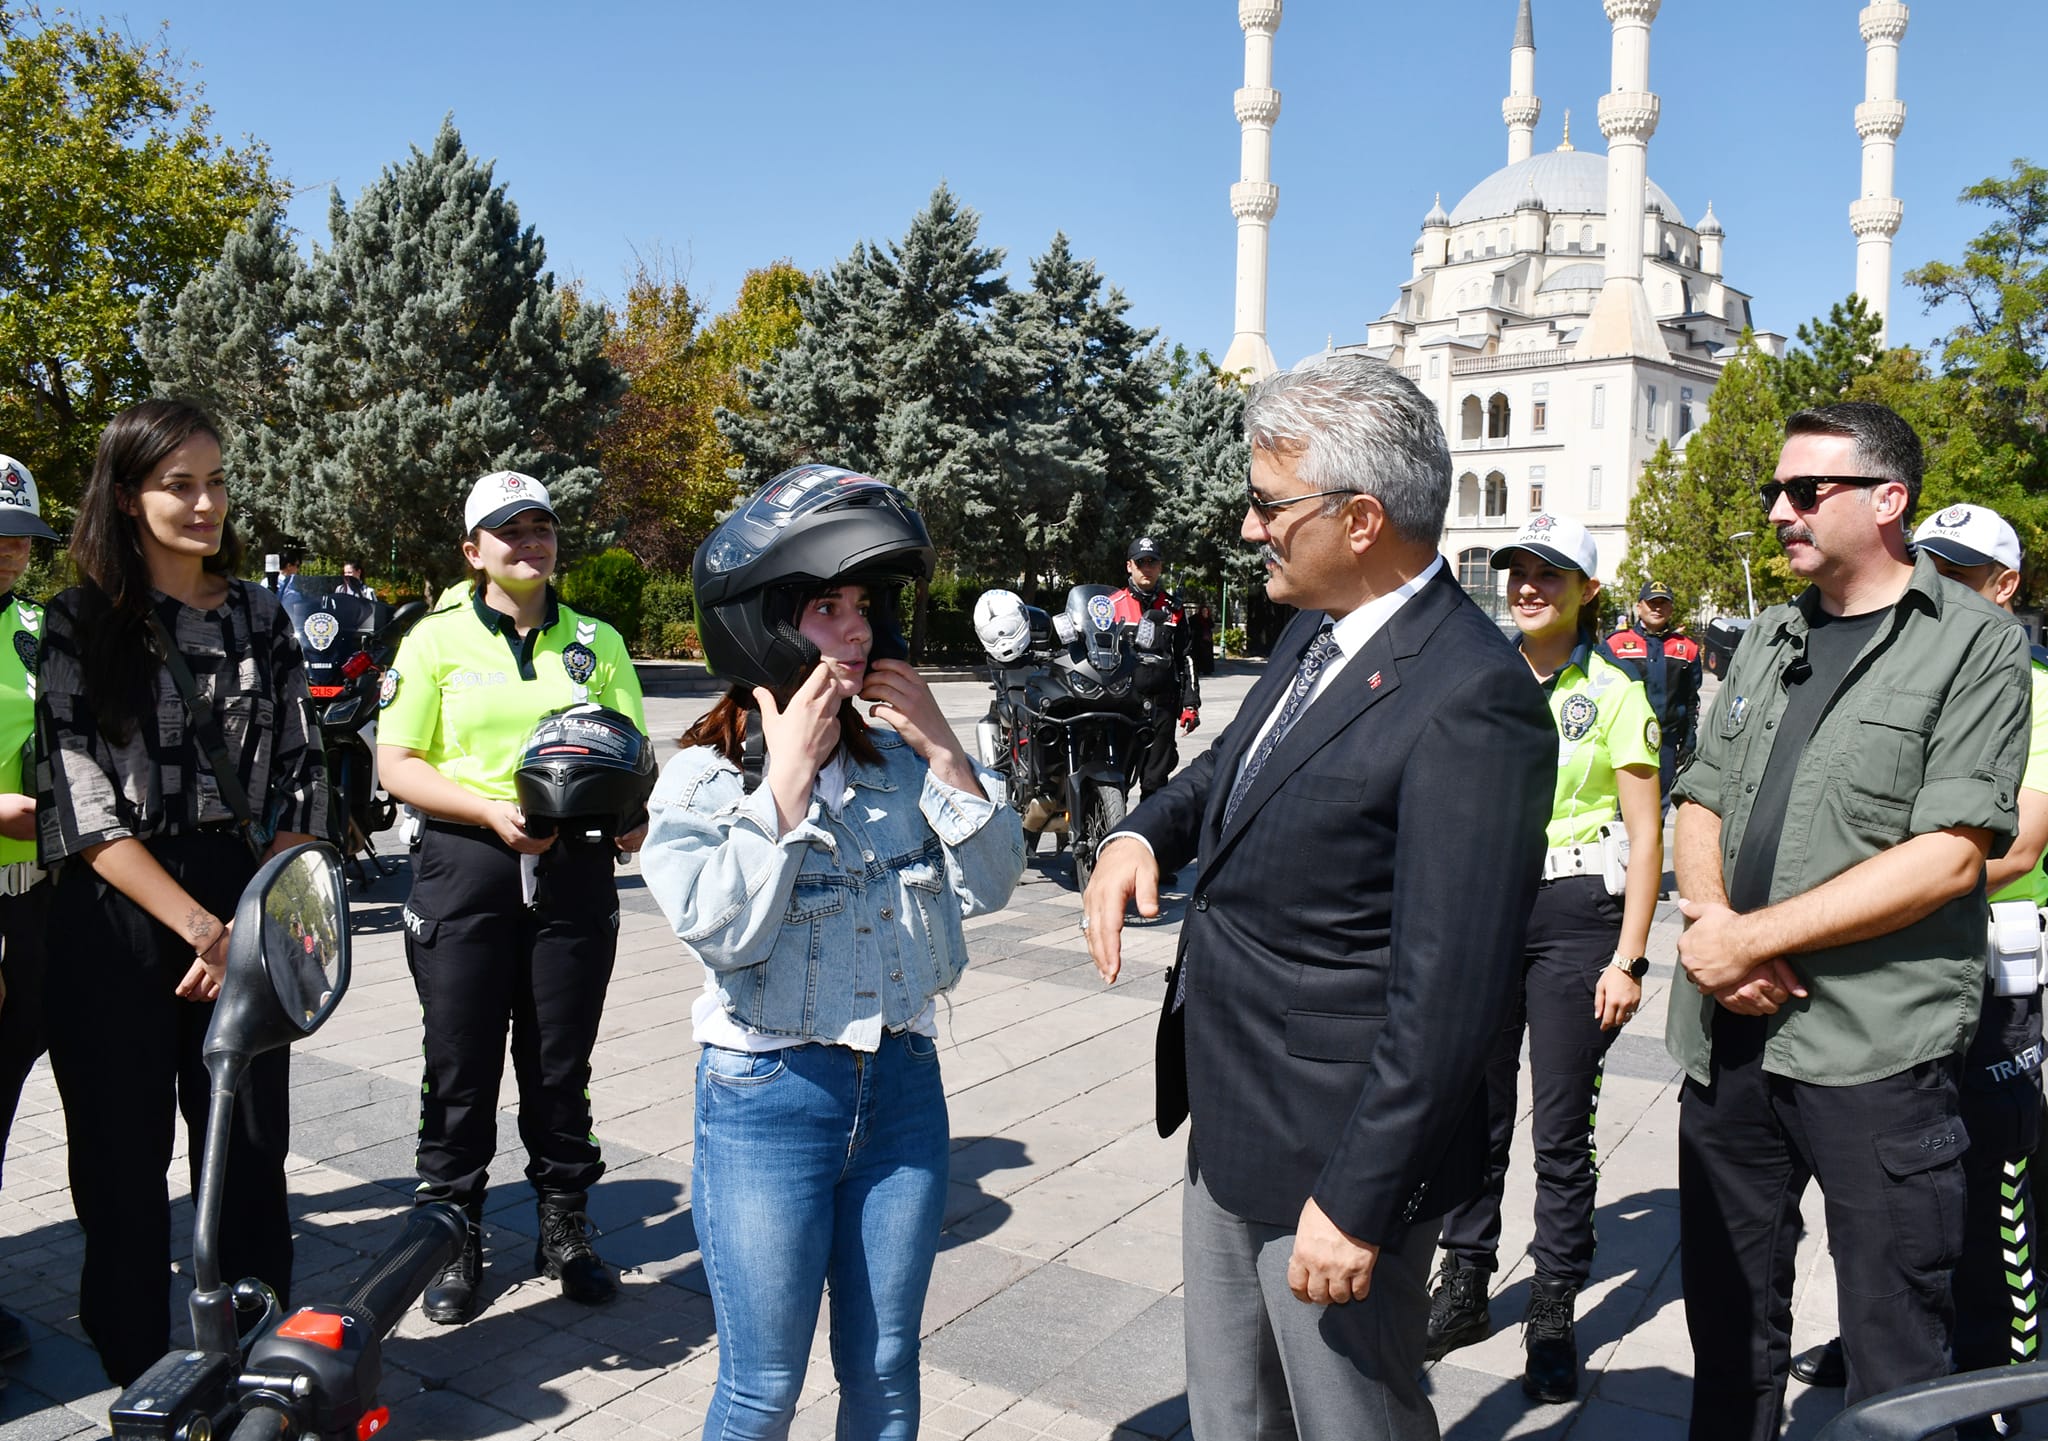 Kırıkkale Valisi Mehmet Makas, “Kaskınla Yol Ver Hayata” kampanyası için çalışma yaptı